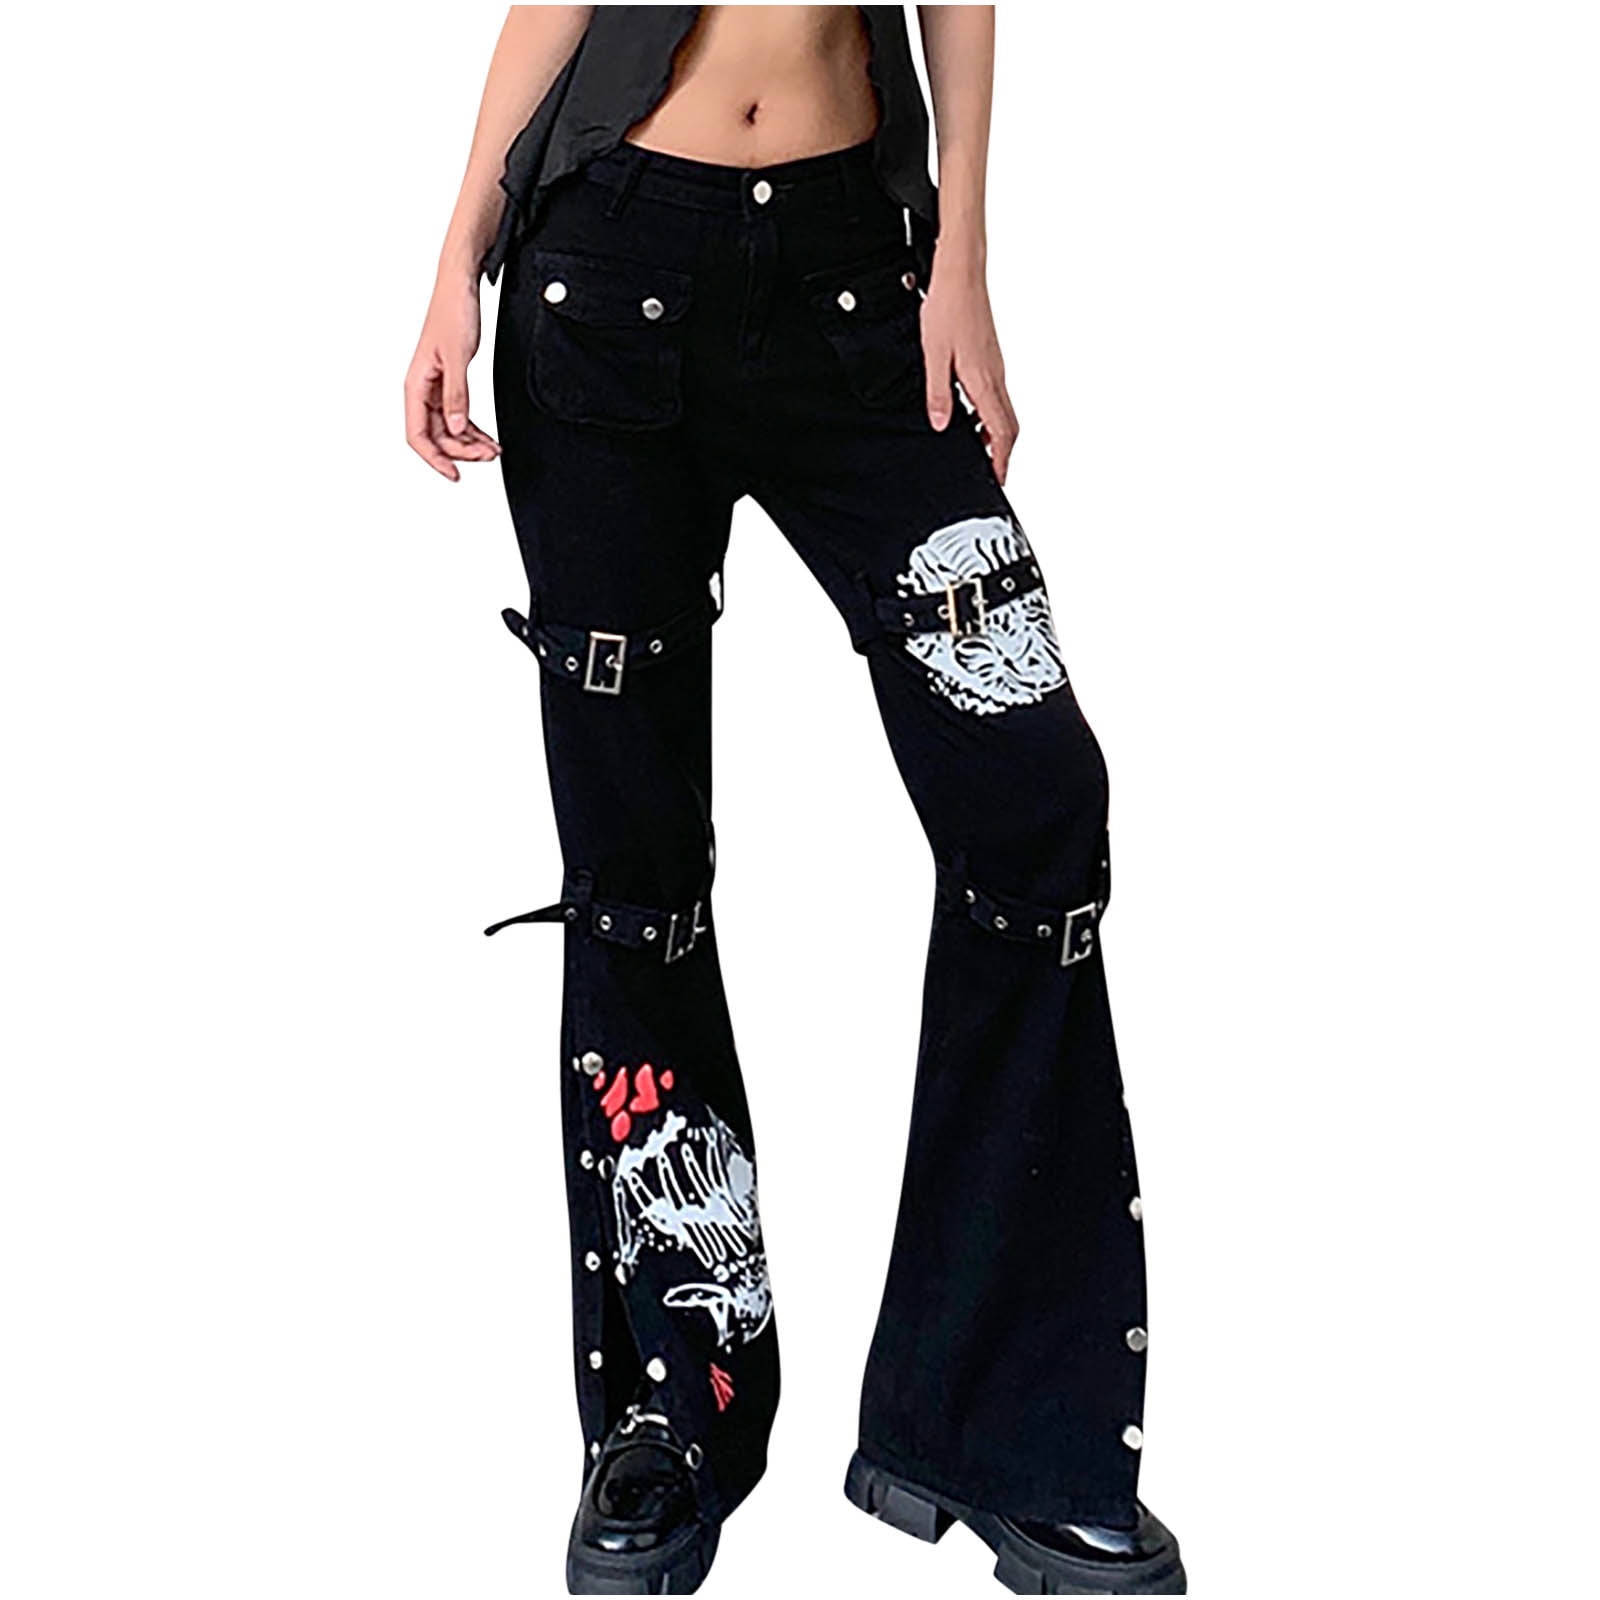 Goth dark folded grunge gothic pants for women harajuku punk